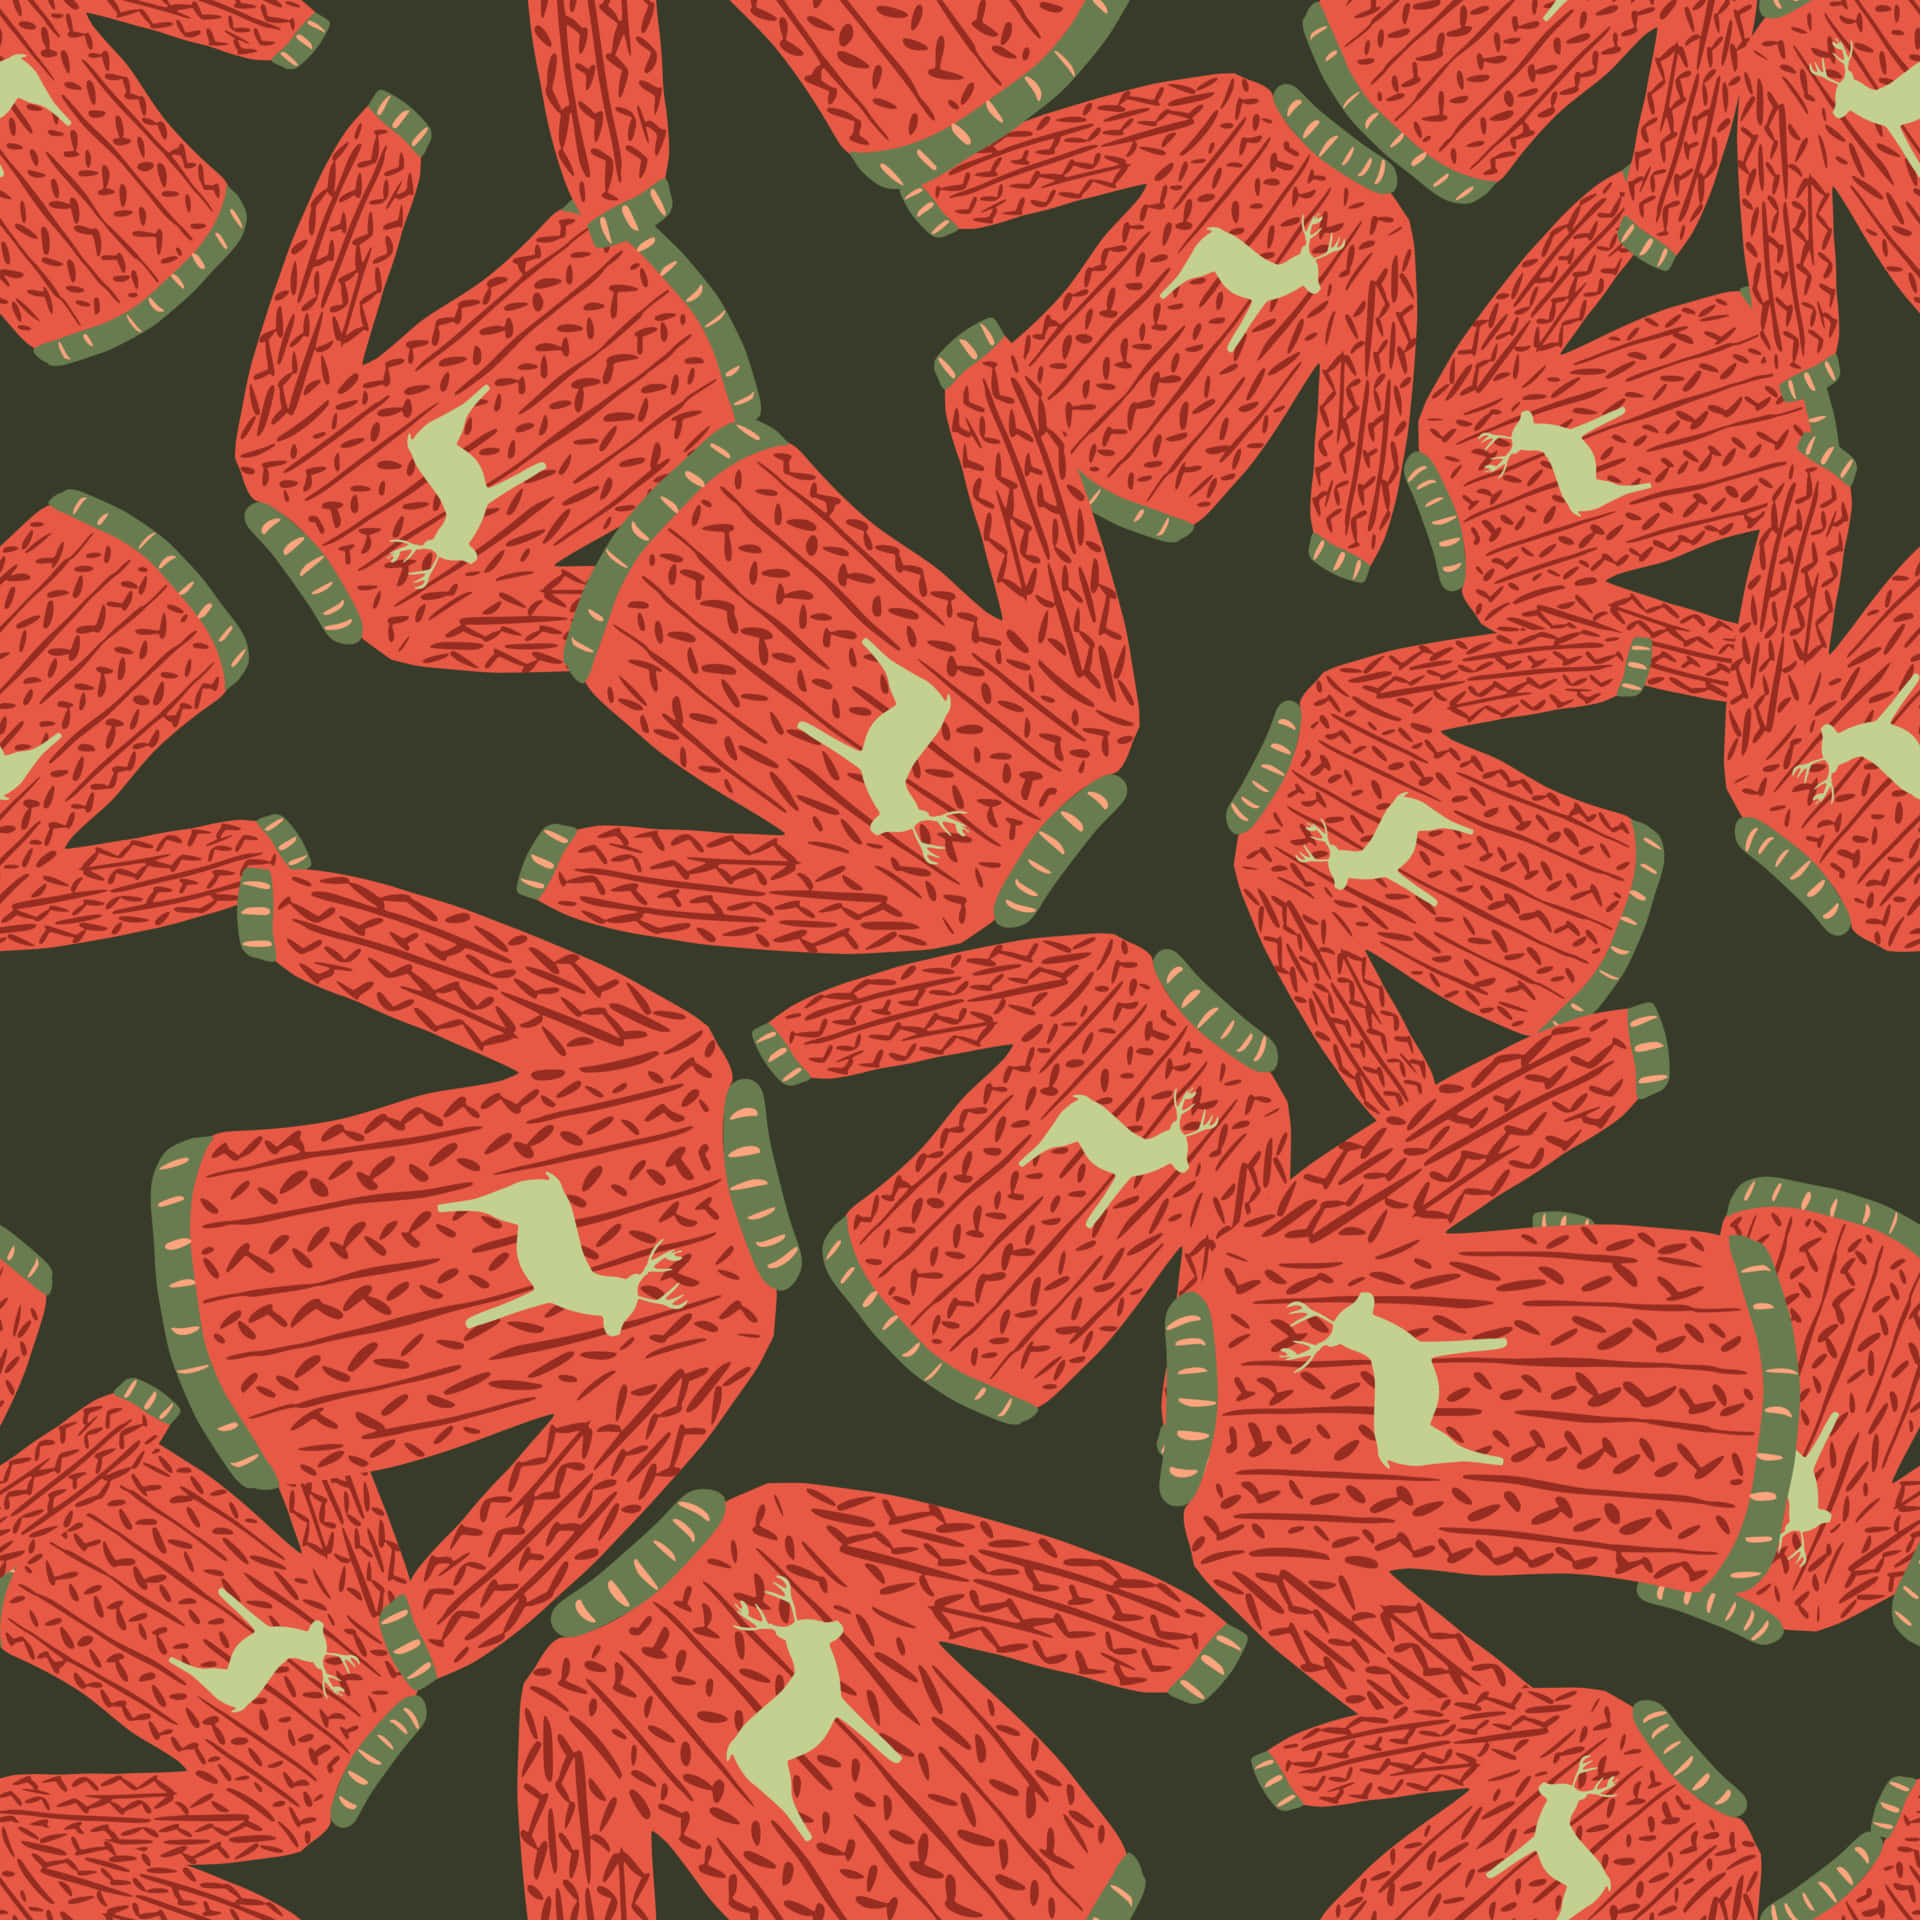 Et mønster af trøjer med hjorte på det. Wallpaper